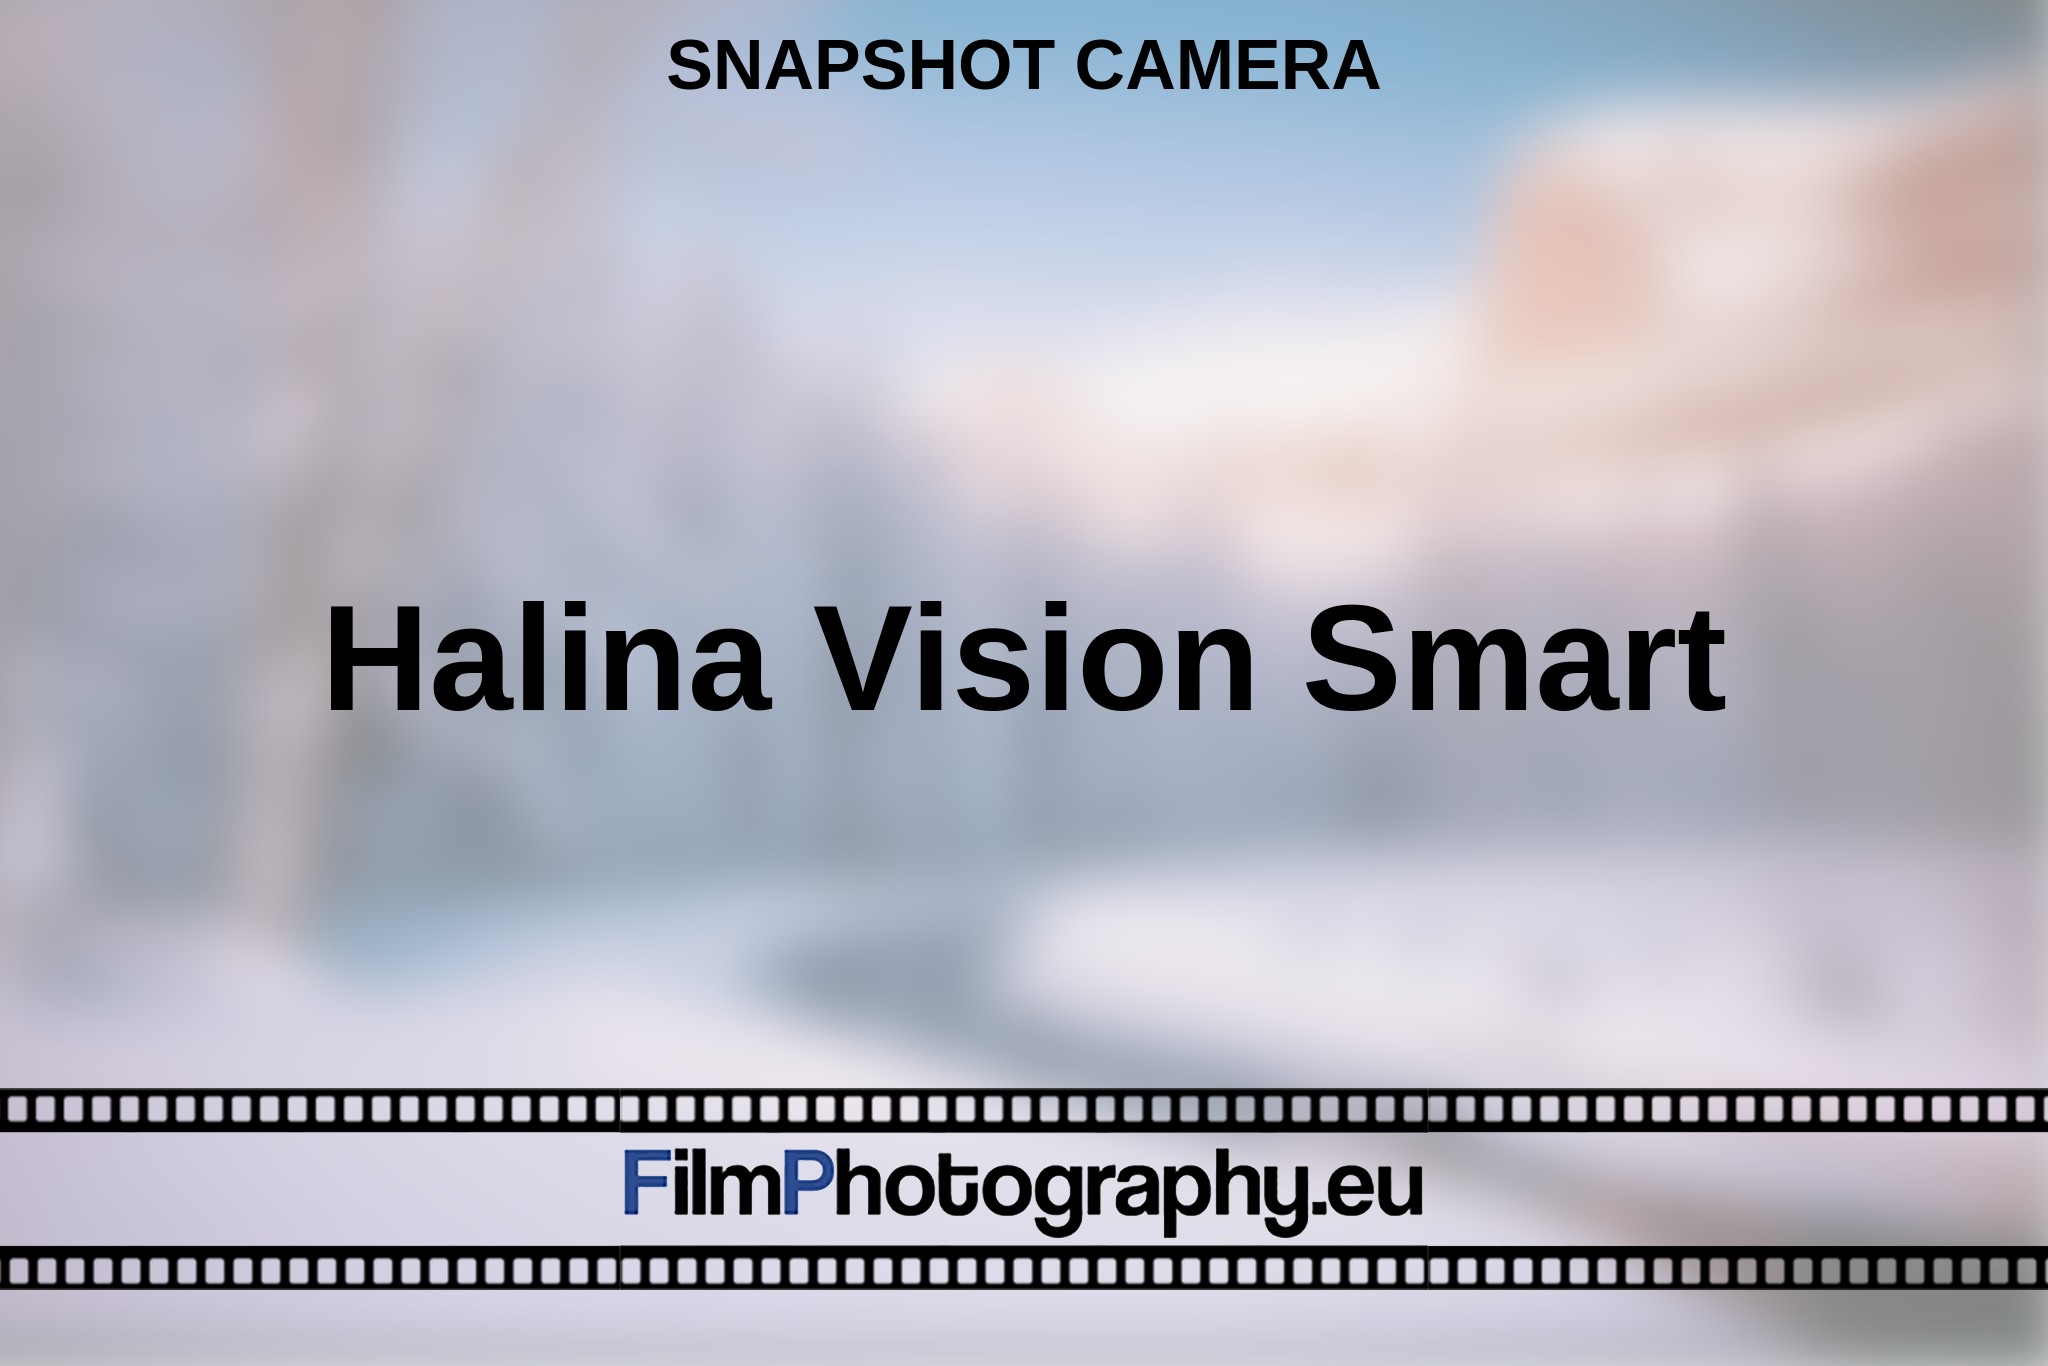 halina-vision-smart-snapshot-camera-en-bnv.jpg